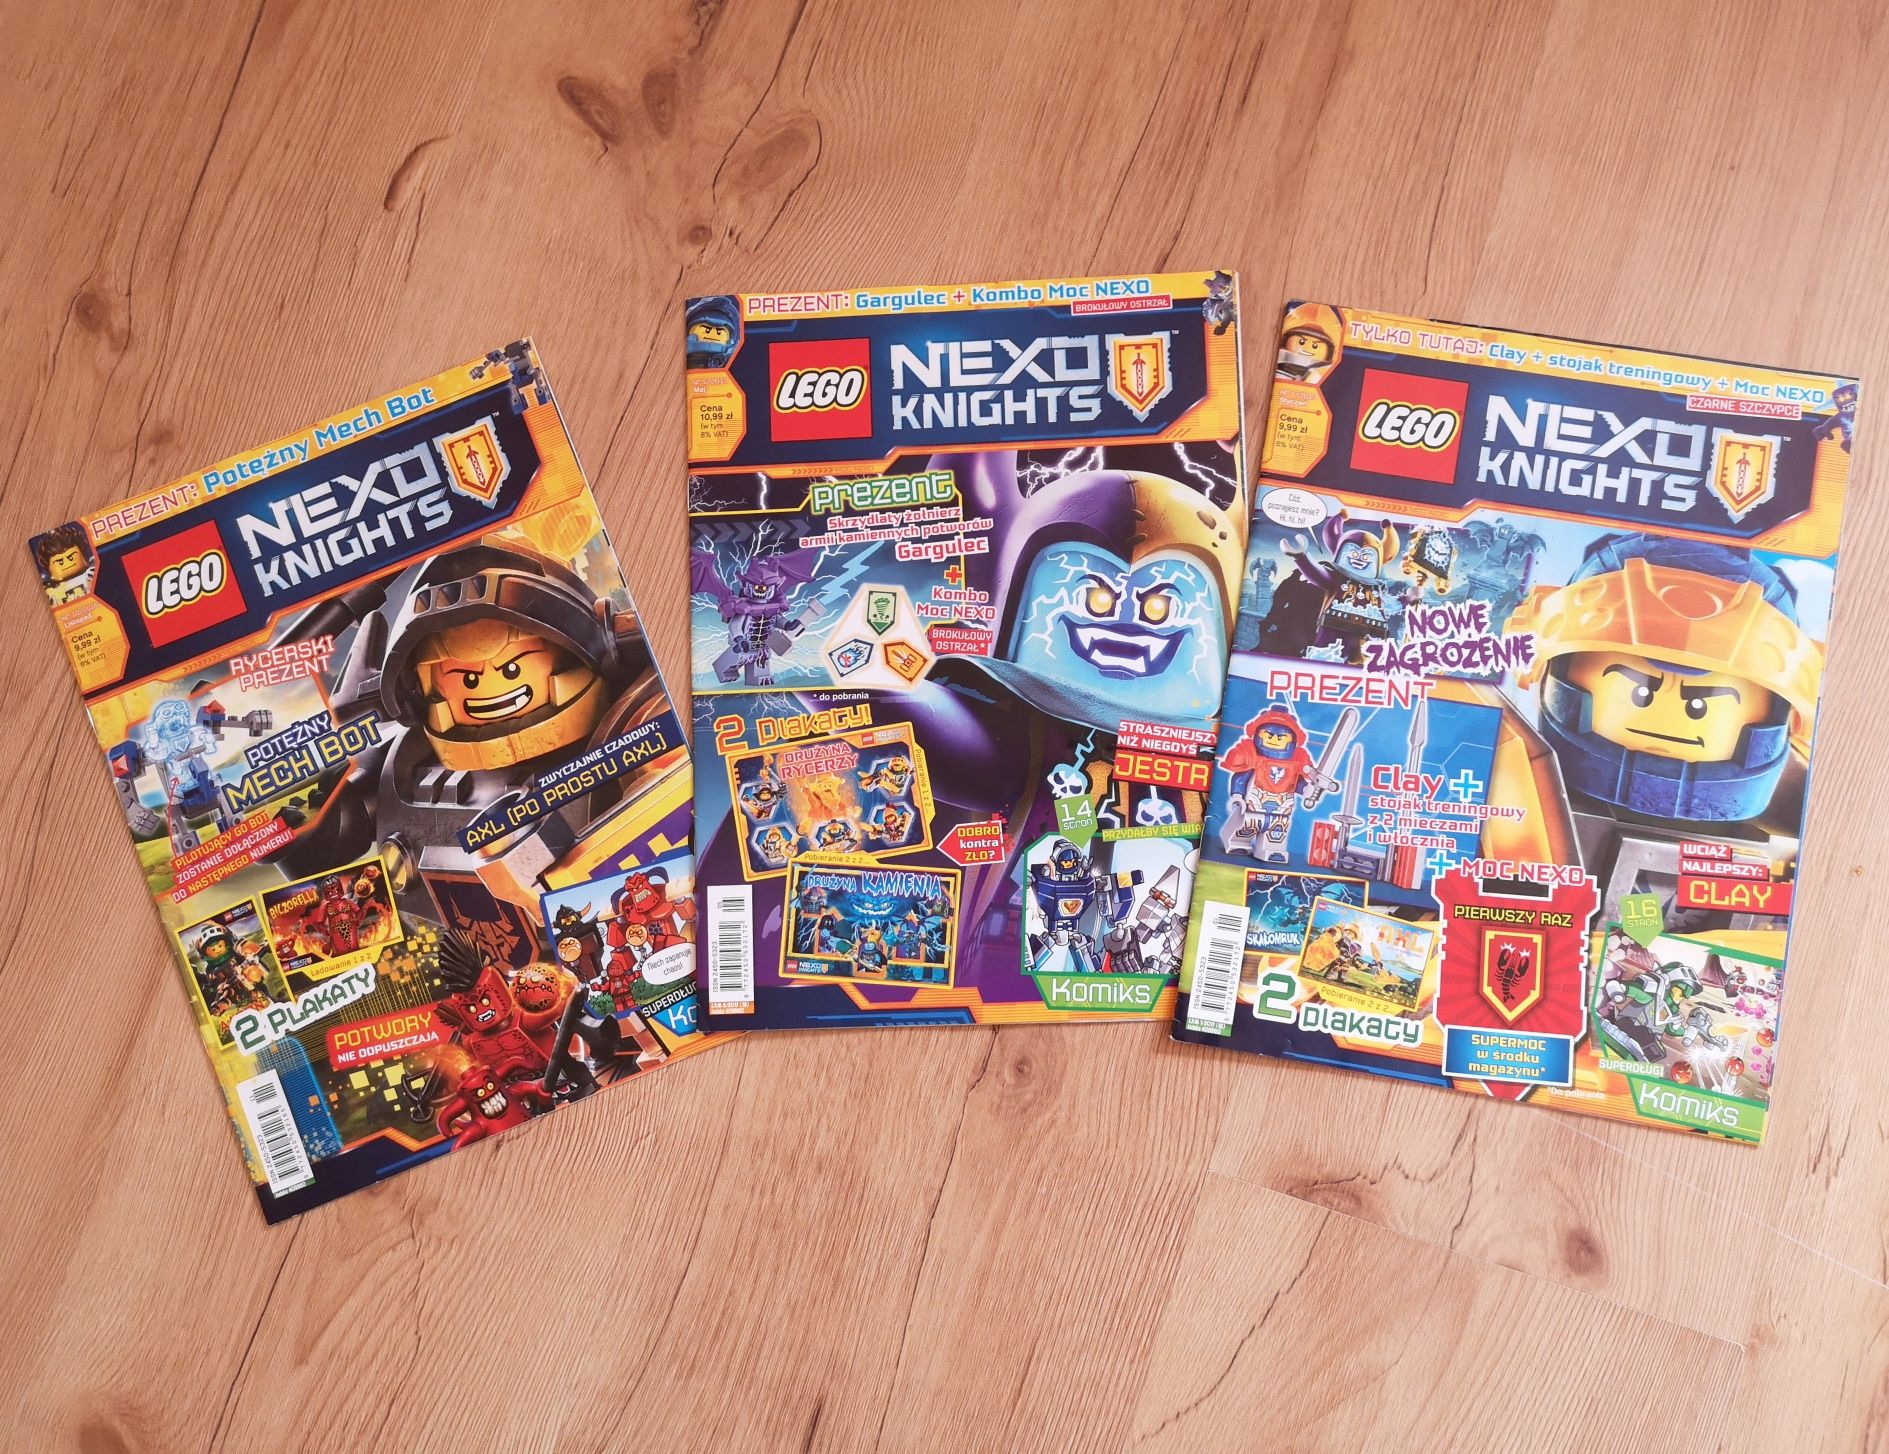 LEGO NEXO KNIGHTS - zestaw album/klaser,  karty,  gazetki itp.